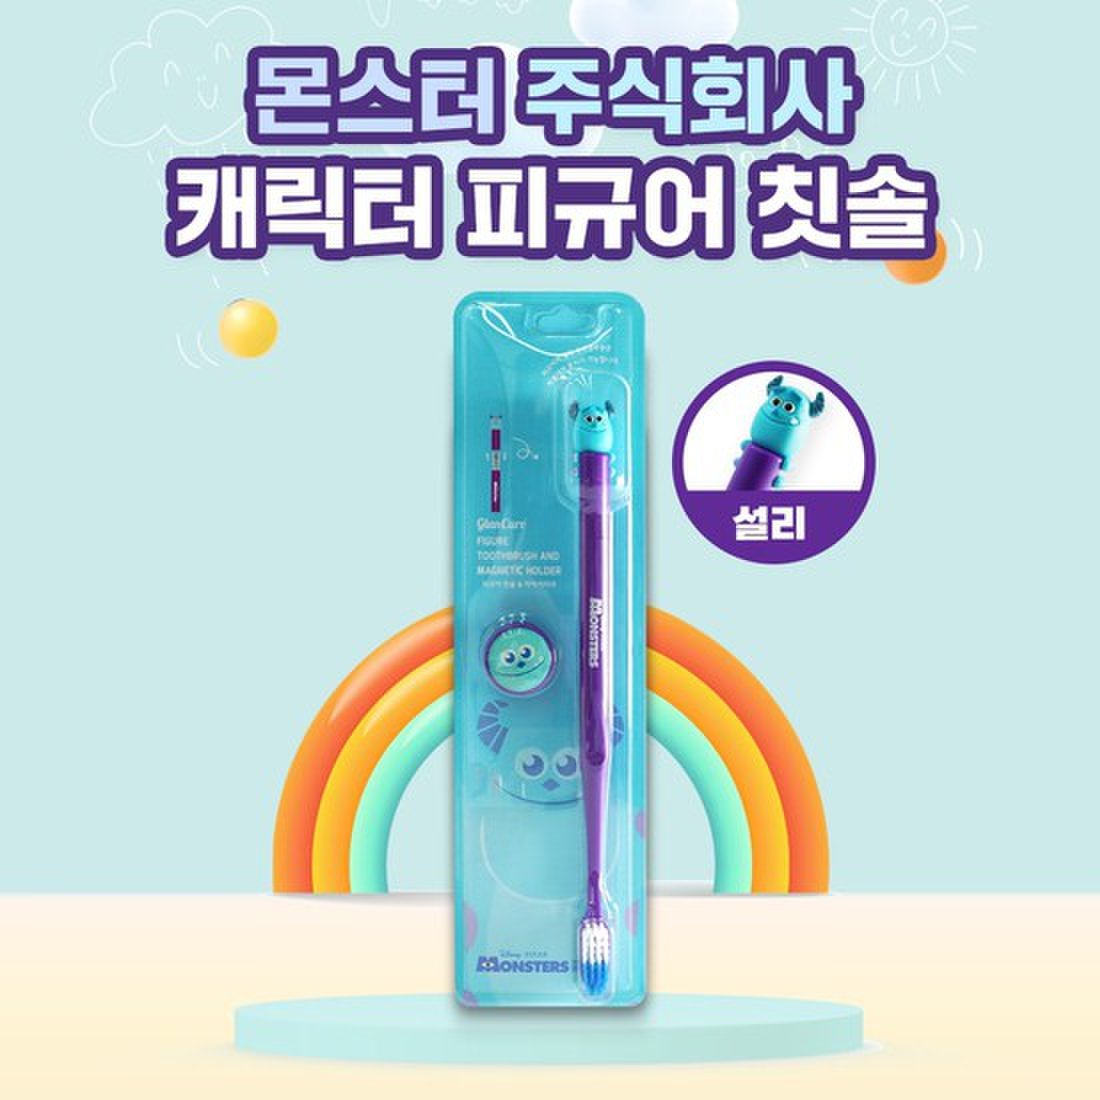 韓國🇰🇷 正版 迪士尼 皮克斯 怪獸電力公司 造型磁吸式牙刷 兒童牙刷 立體頭牙刷 牆收納 細軟刷毛 卡通造型牙刷 毛怪款